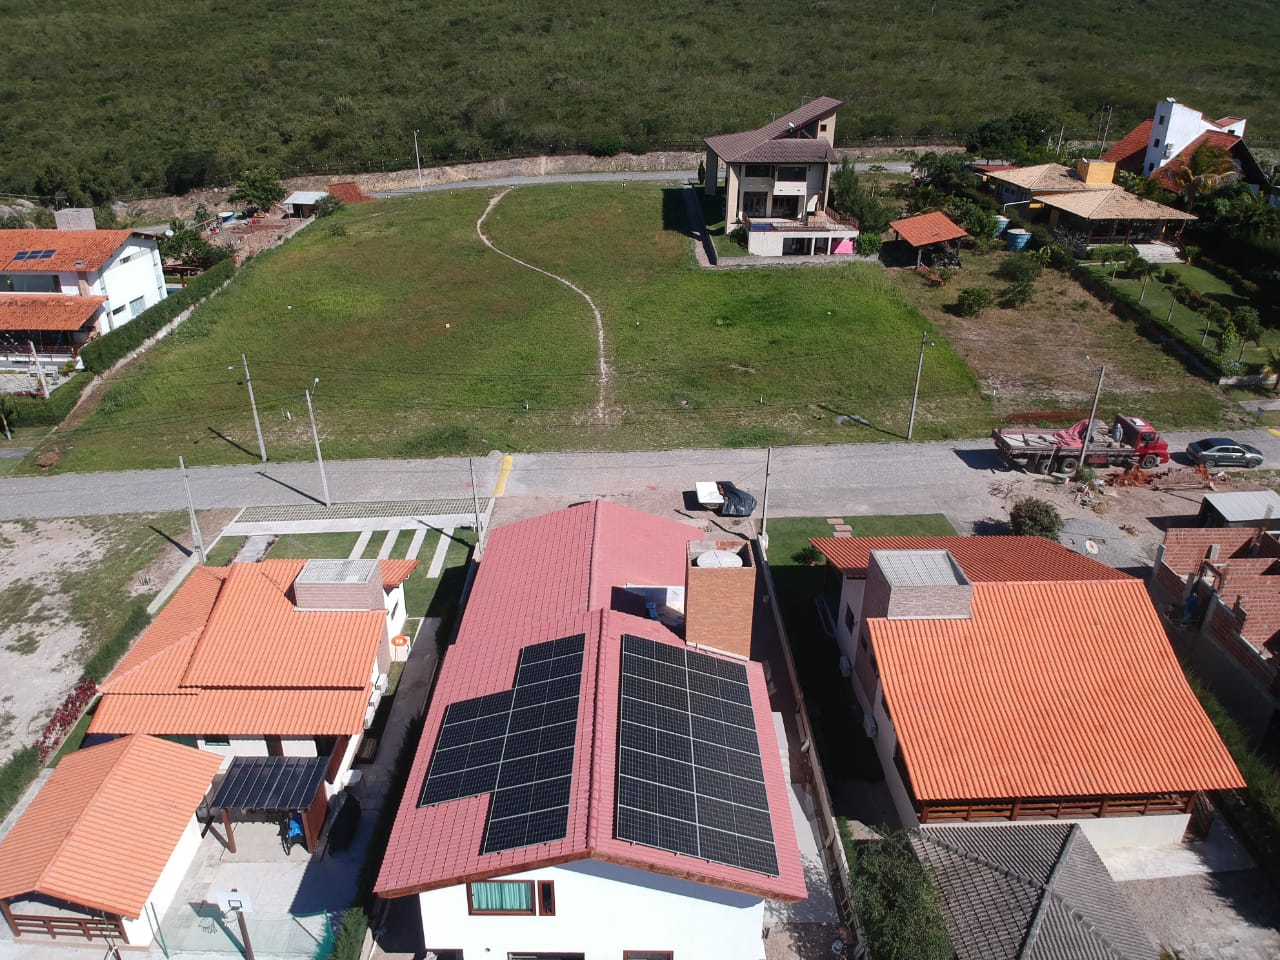 Sistema instalado no bairro Zona rural, Sairé-PE. Composto por 27 módulos Solar Fotovoltaico de potência 535W e 07 Micro inversor APSystems-QS1A. Com plataforma para monitoramento Online nível módulo a módulo.